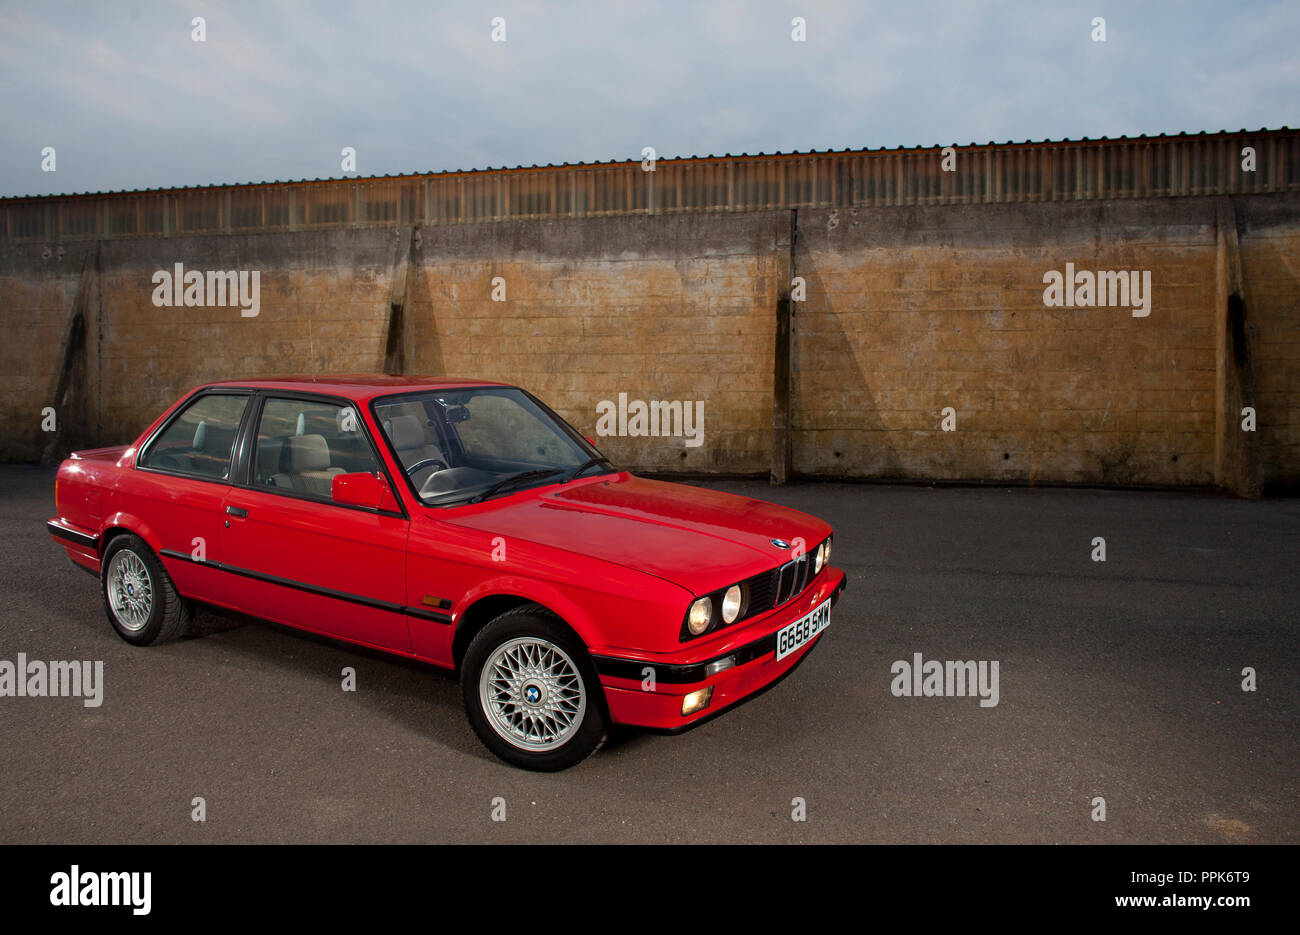 Une droite UK spec 1990 rouge porte 3 BMW E30 série 3 sur une zone industrielle en Angleterre, Royaume-Uni Banque D'Images